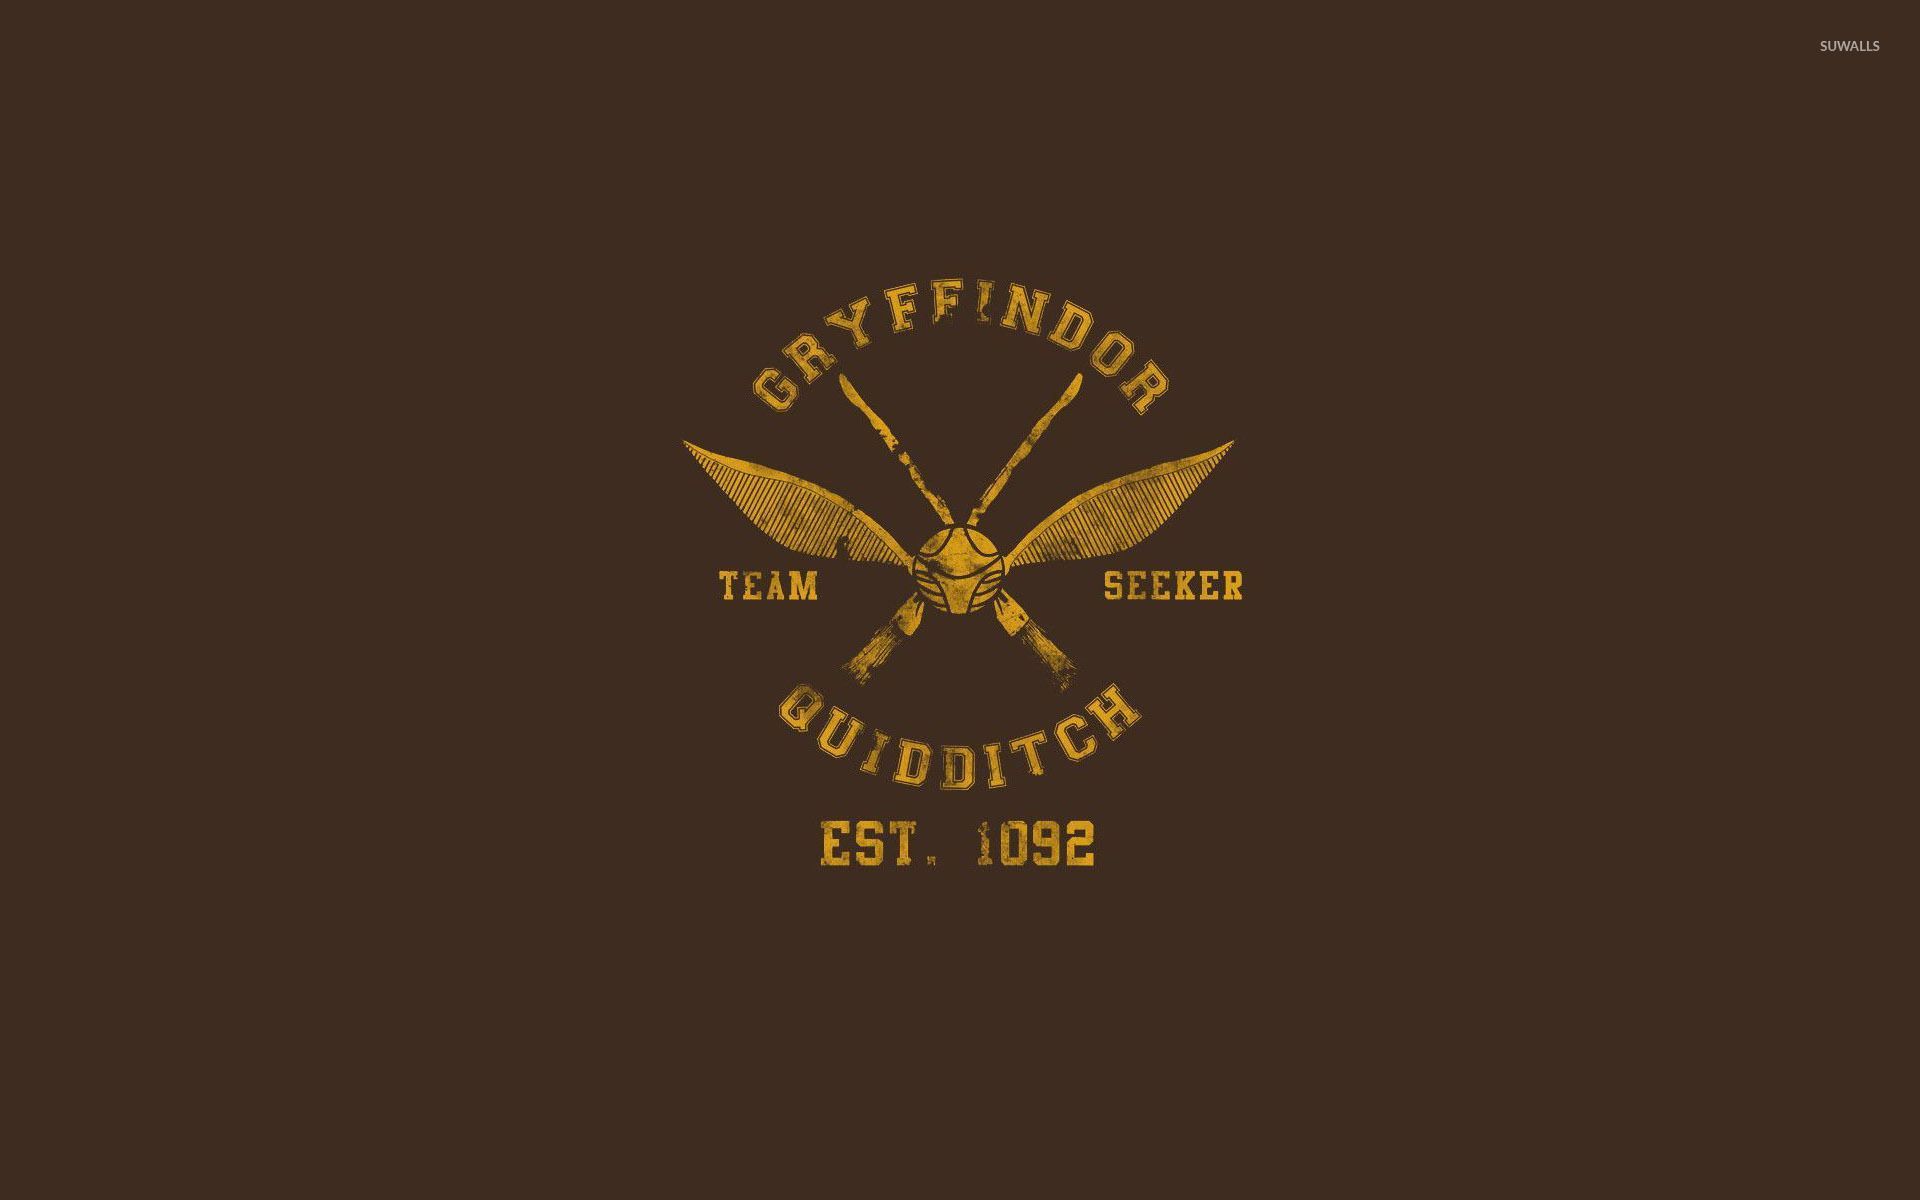 Quidditch Wallpaper Free Quidditch Background